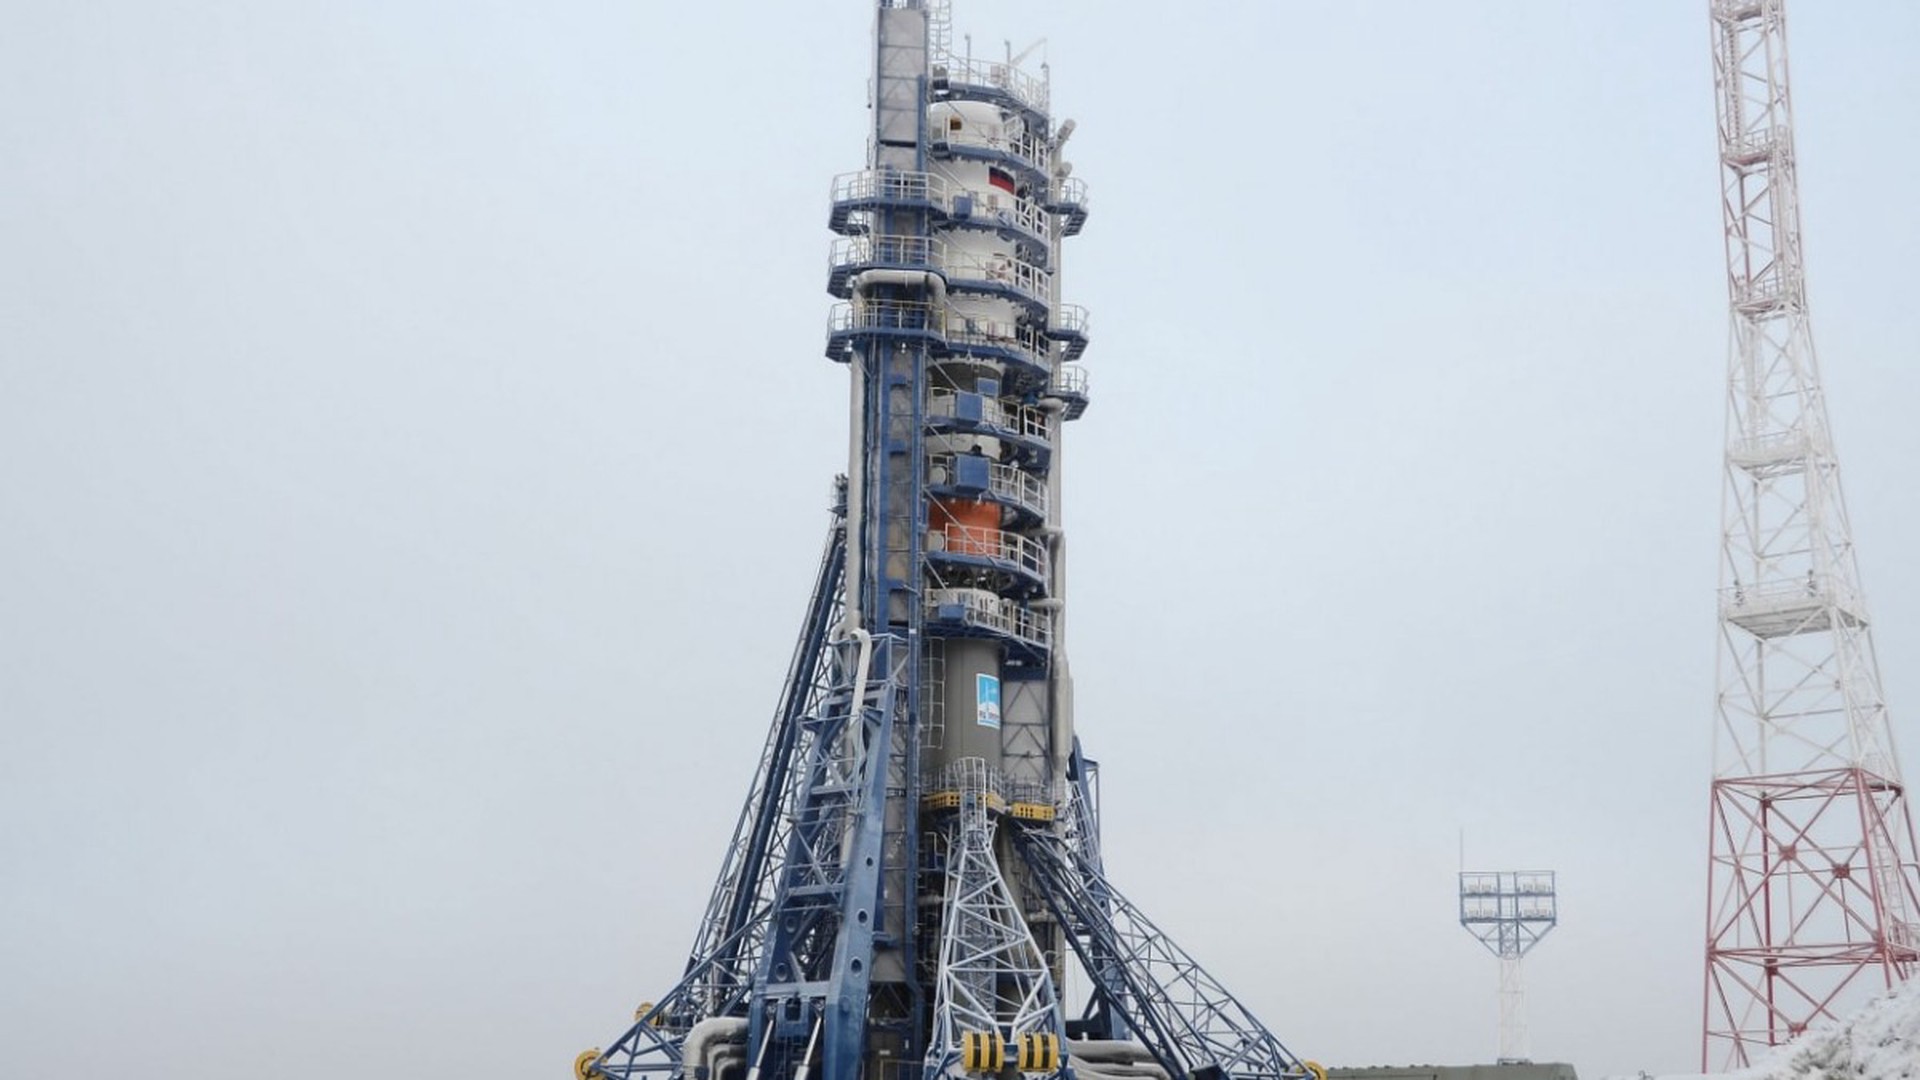 «Союз 2.1б» с первой в истории современной РФ лунной станцией «Луна-25» стартовал с Восточного